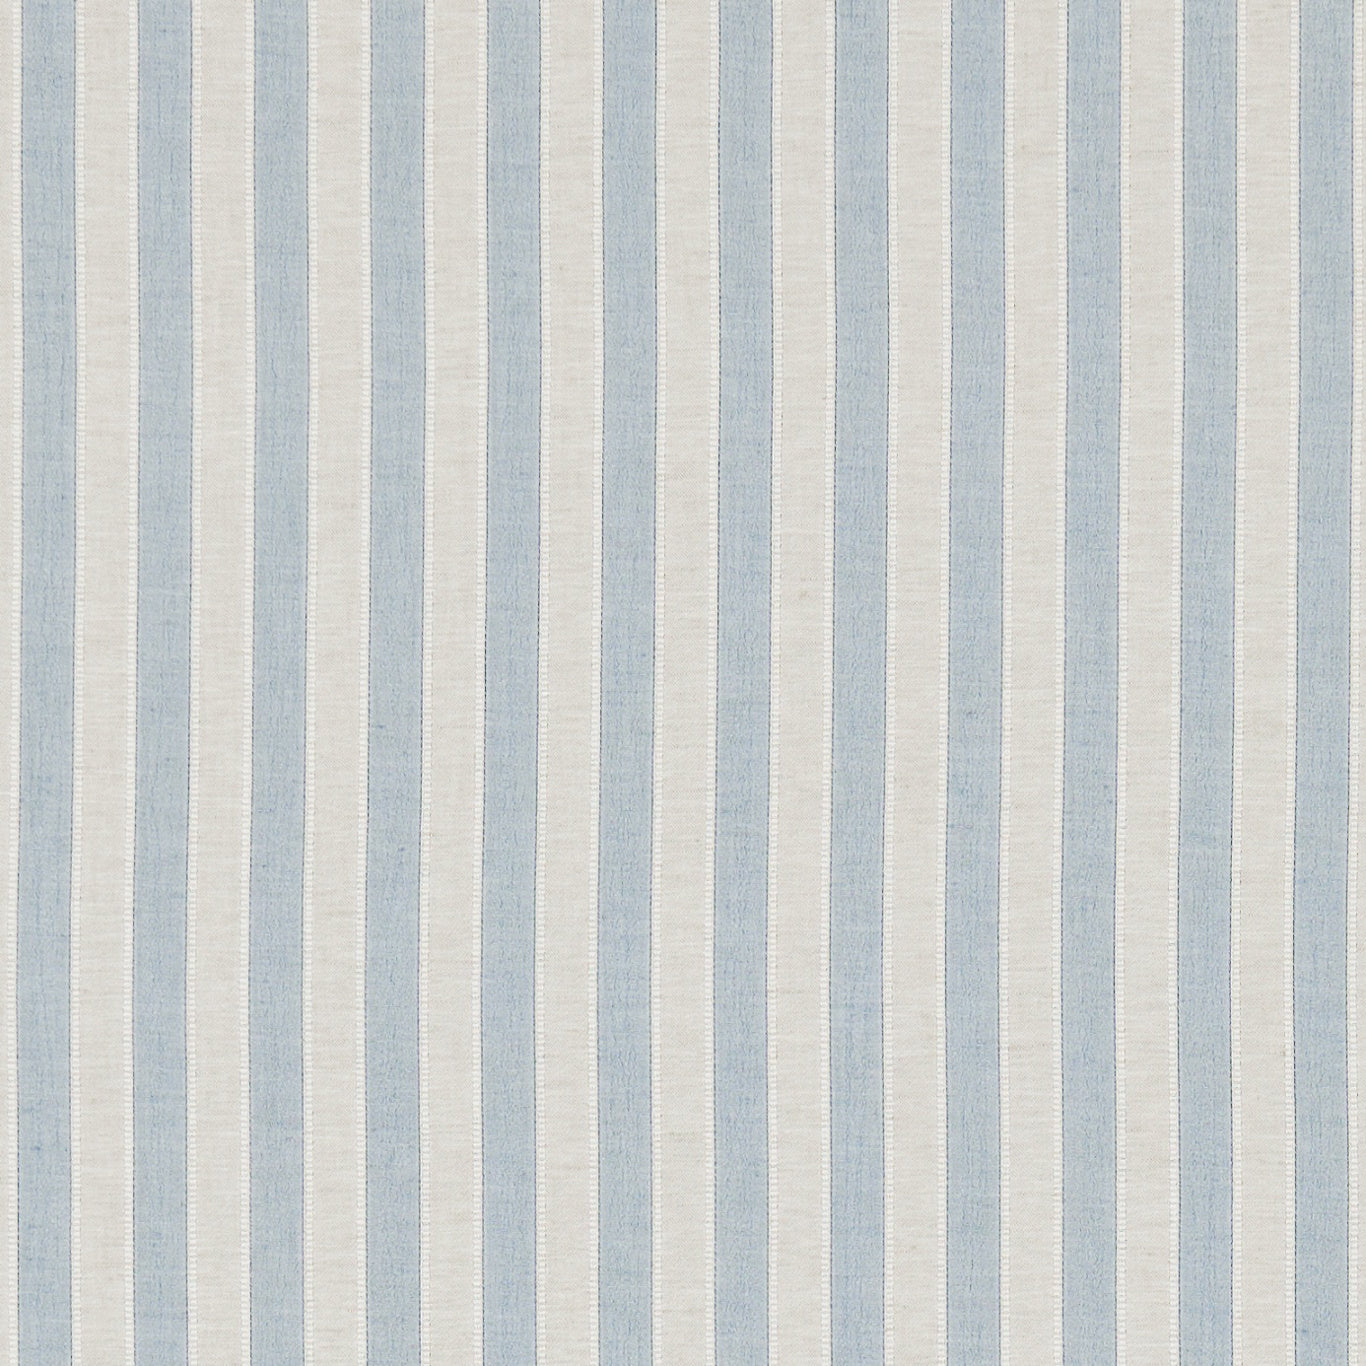 Sorilla Stripe Delft/Linen Fabric By Sanderson